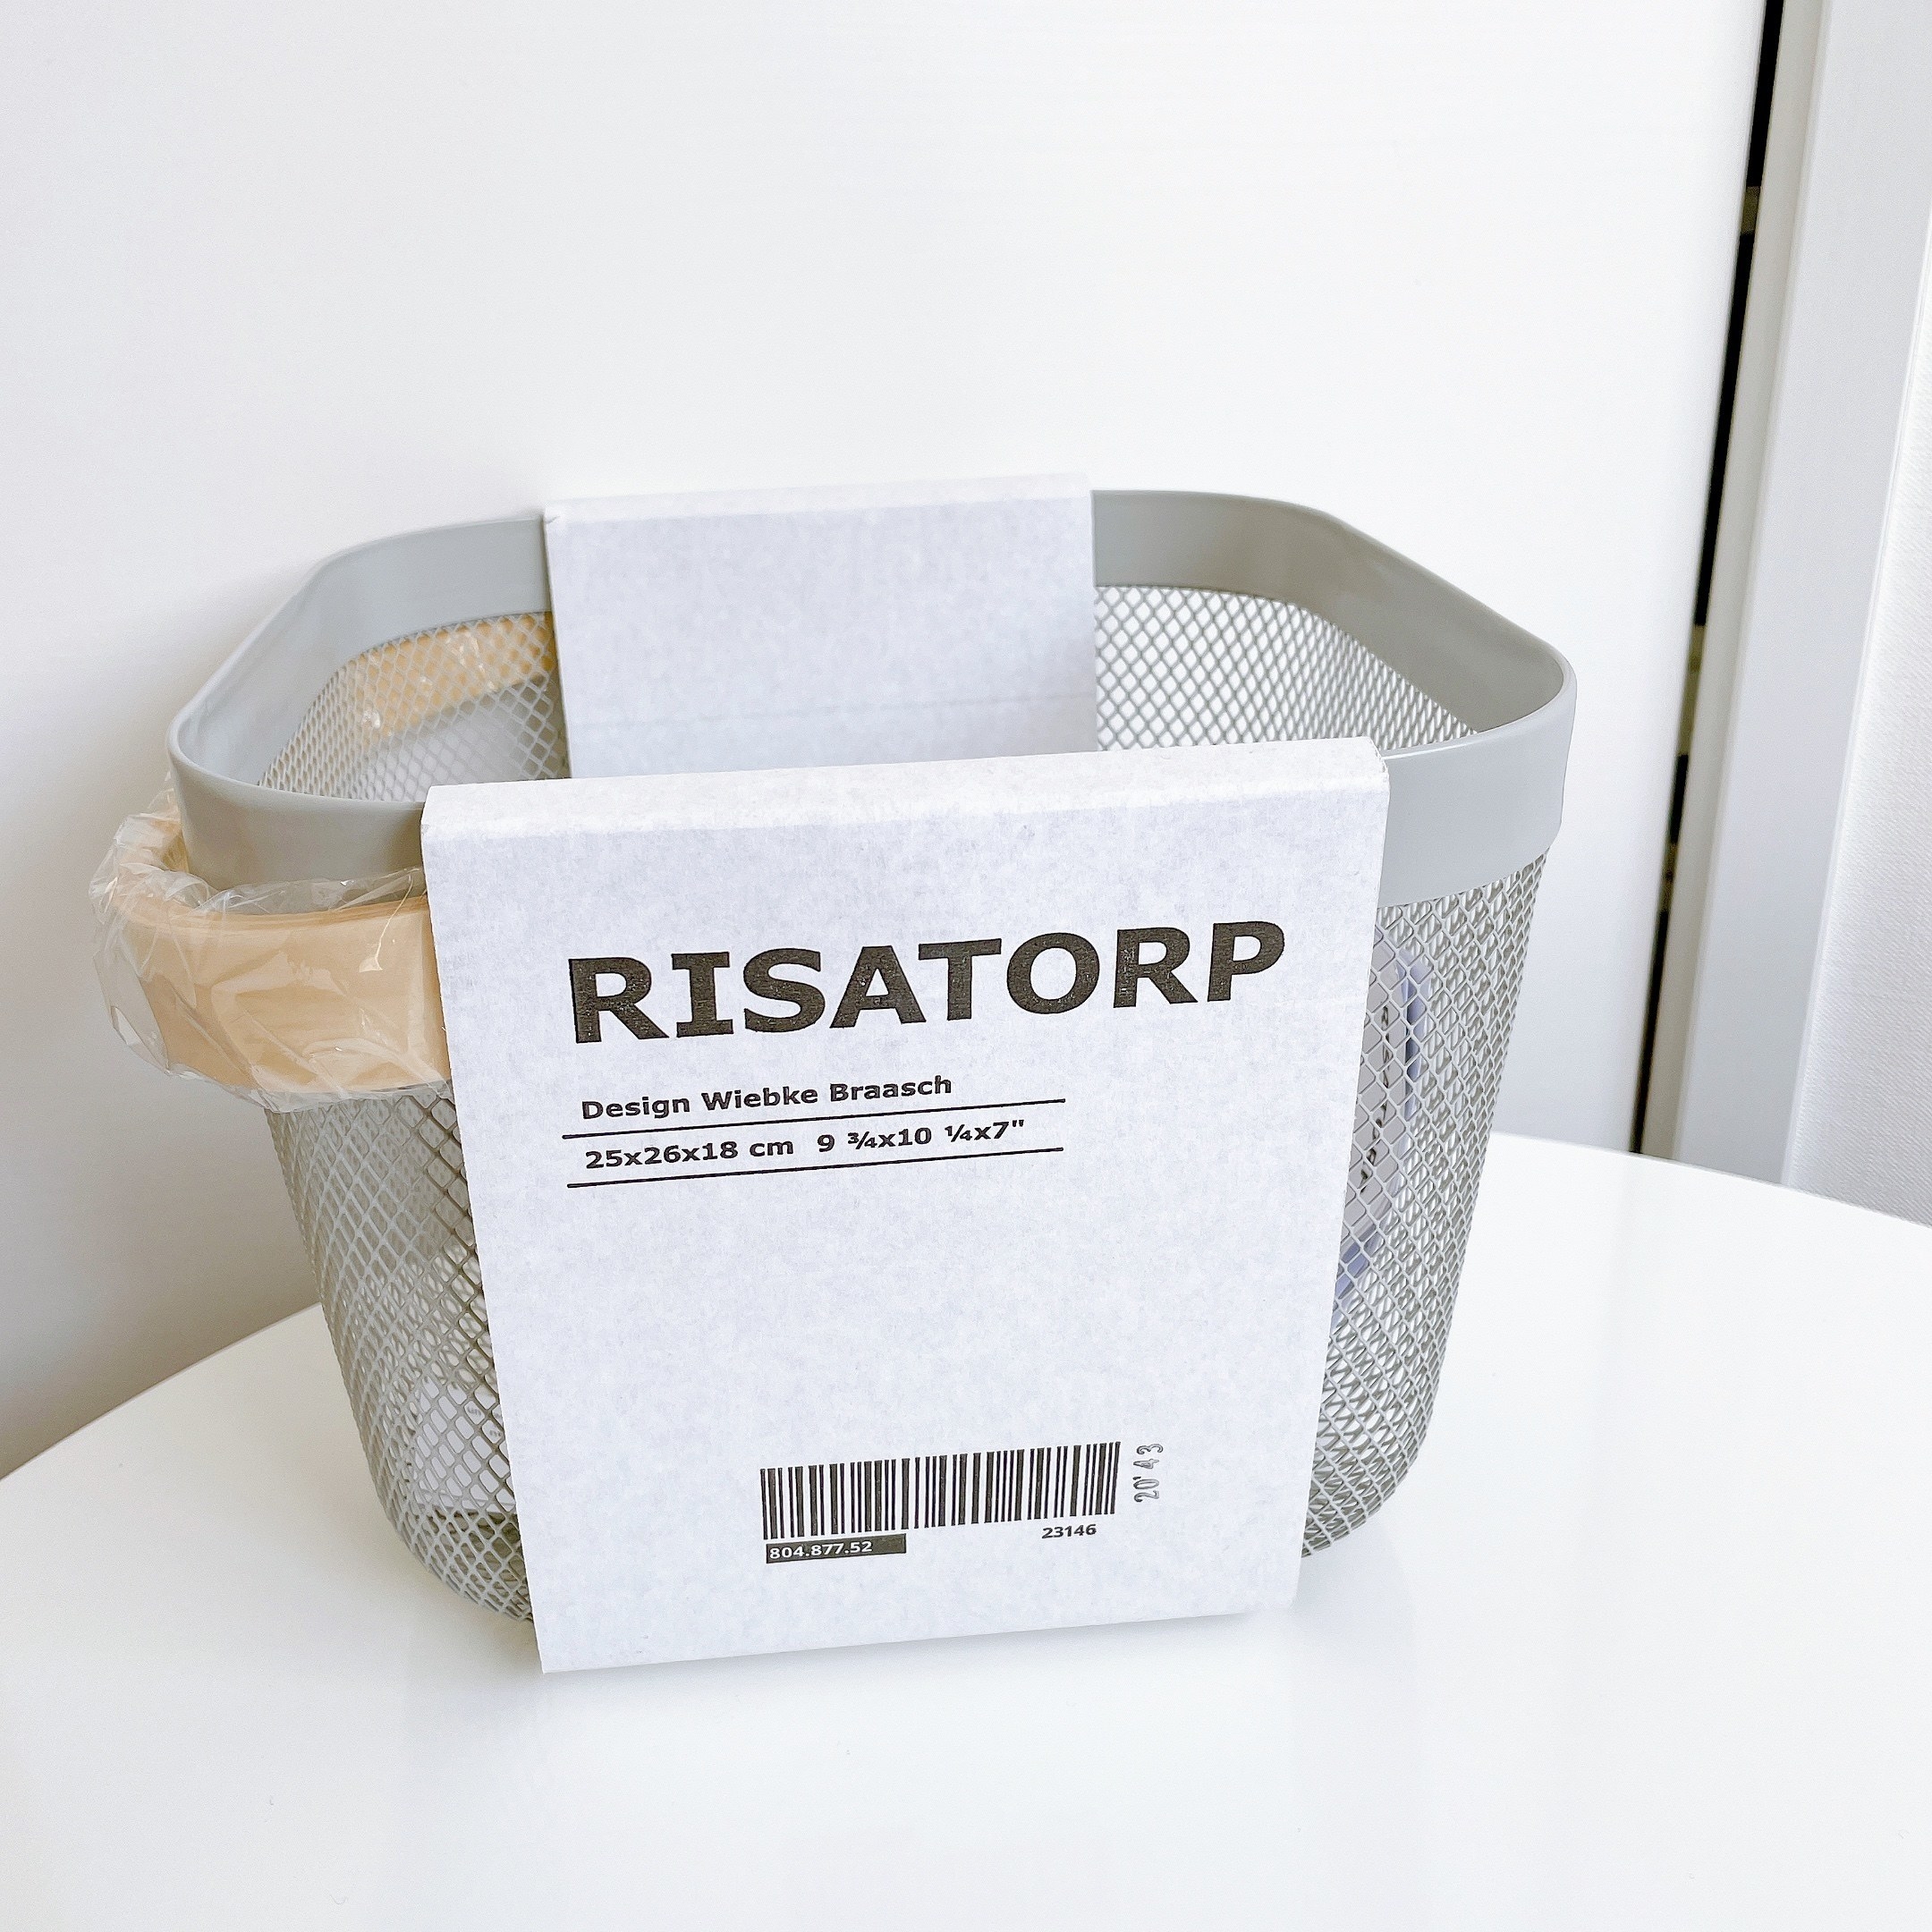 IKEA（イケア）のおすすめの便利グッズ「RISATORP リーサトルプ」